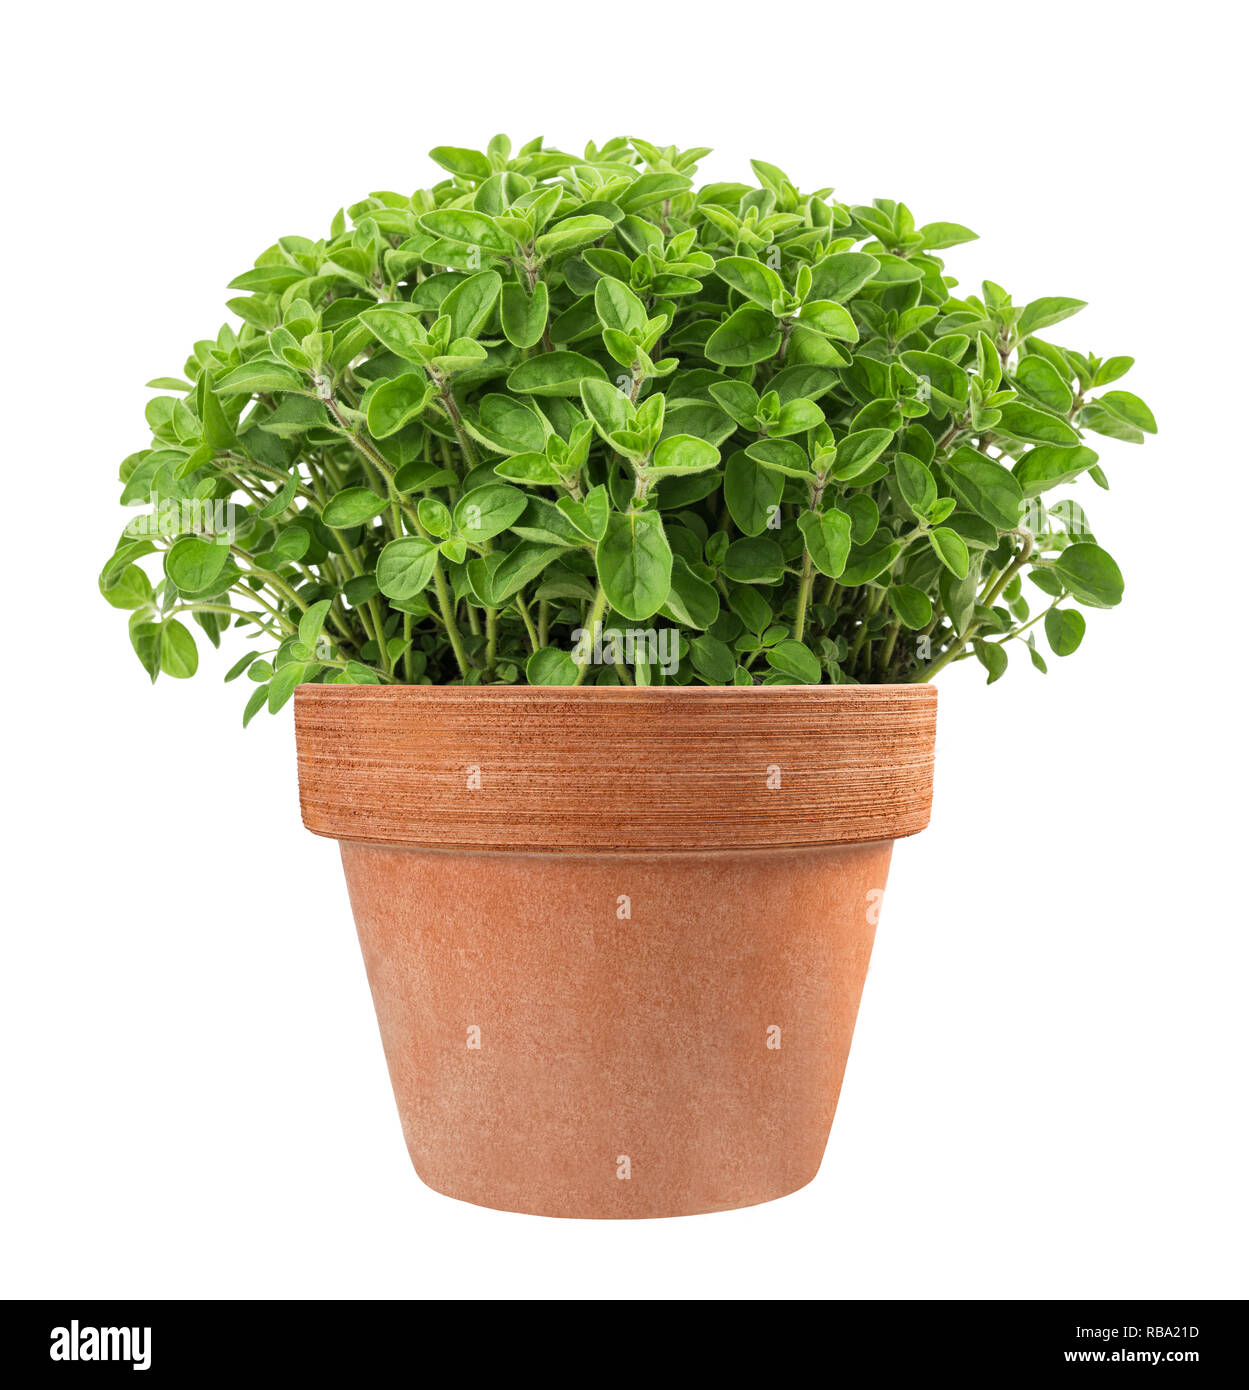 oregano plants in vase isolated on white background Stock Photo